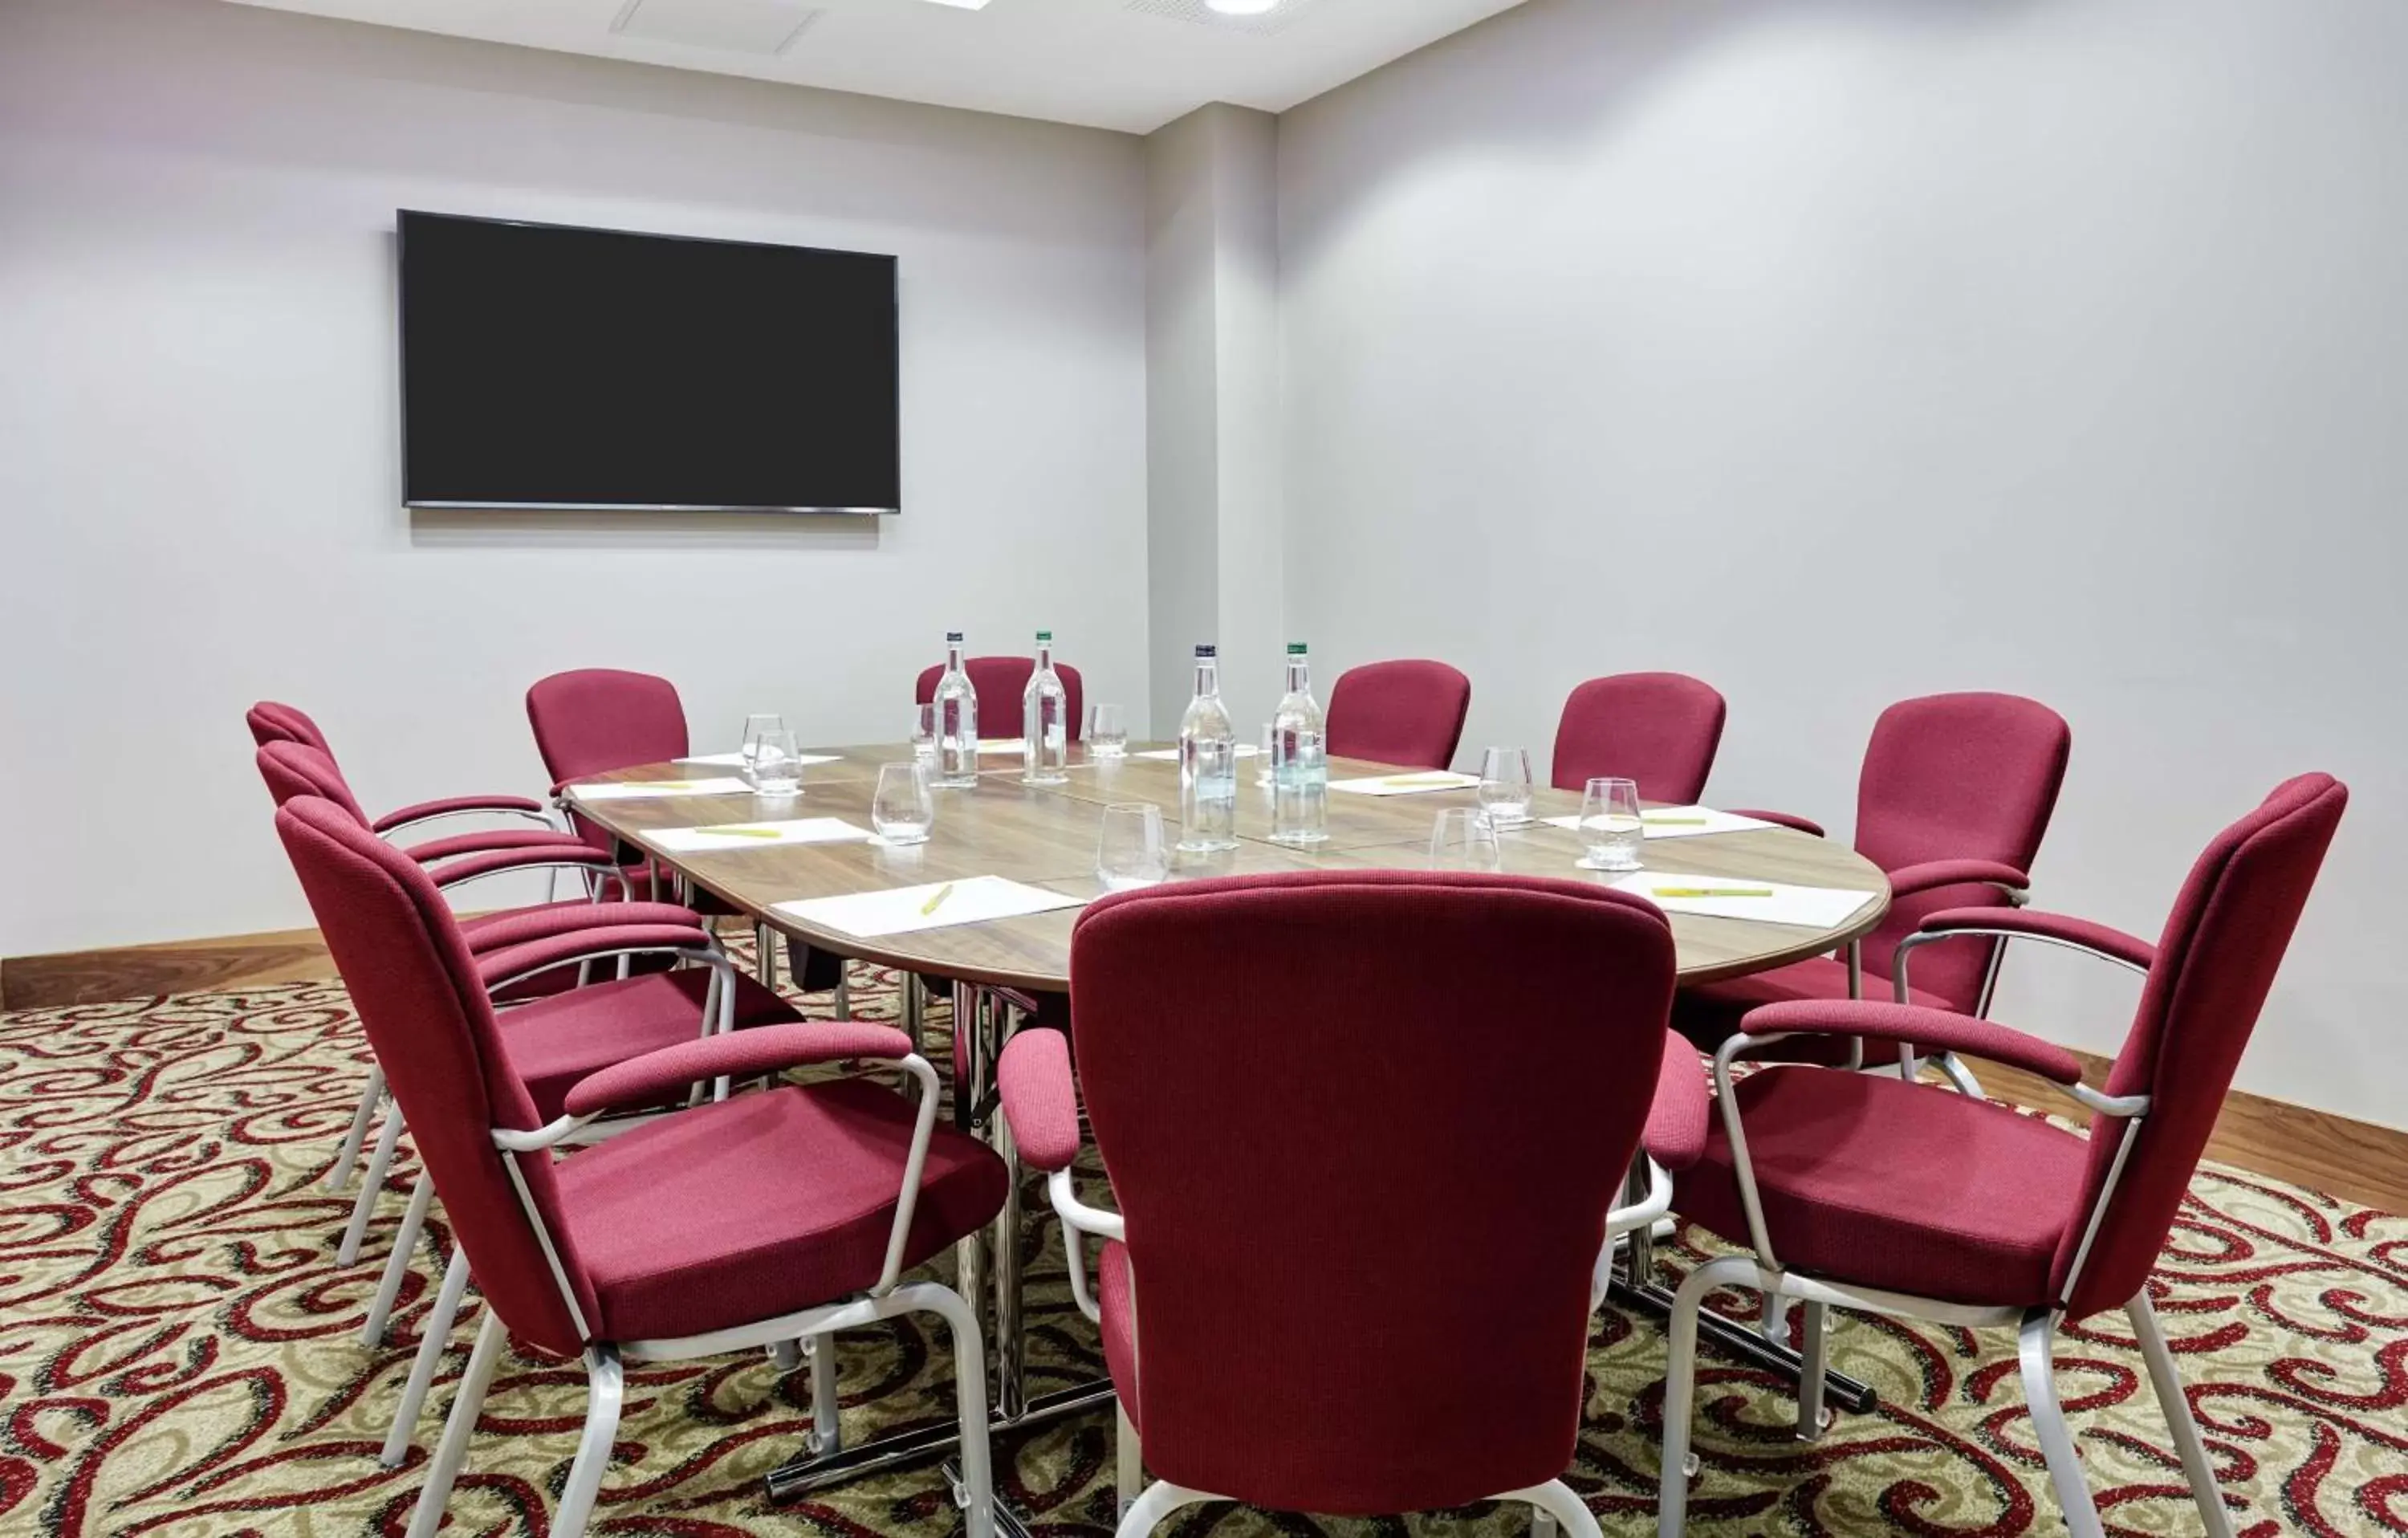 Meeting/conference room in Hilton Garden Inn Sunderland